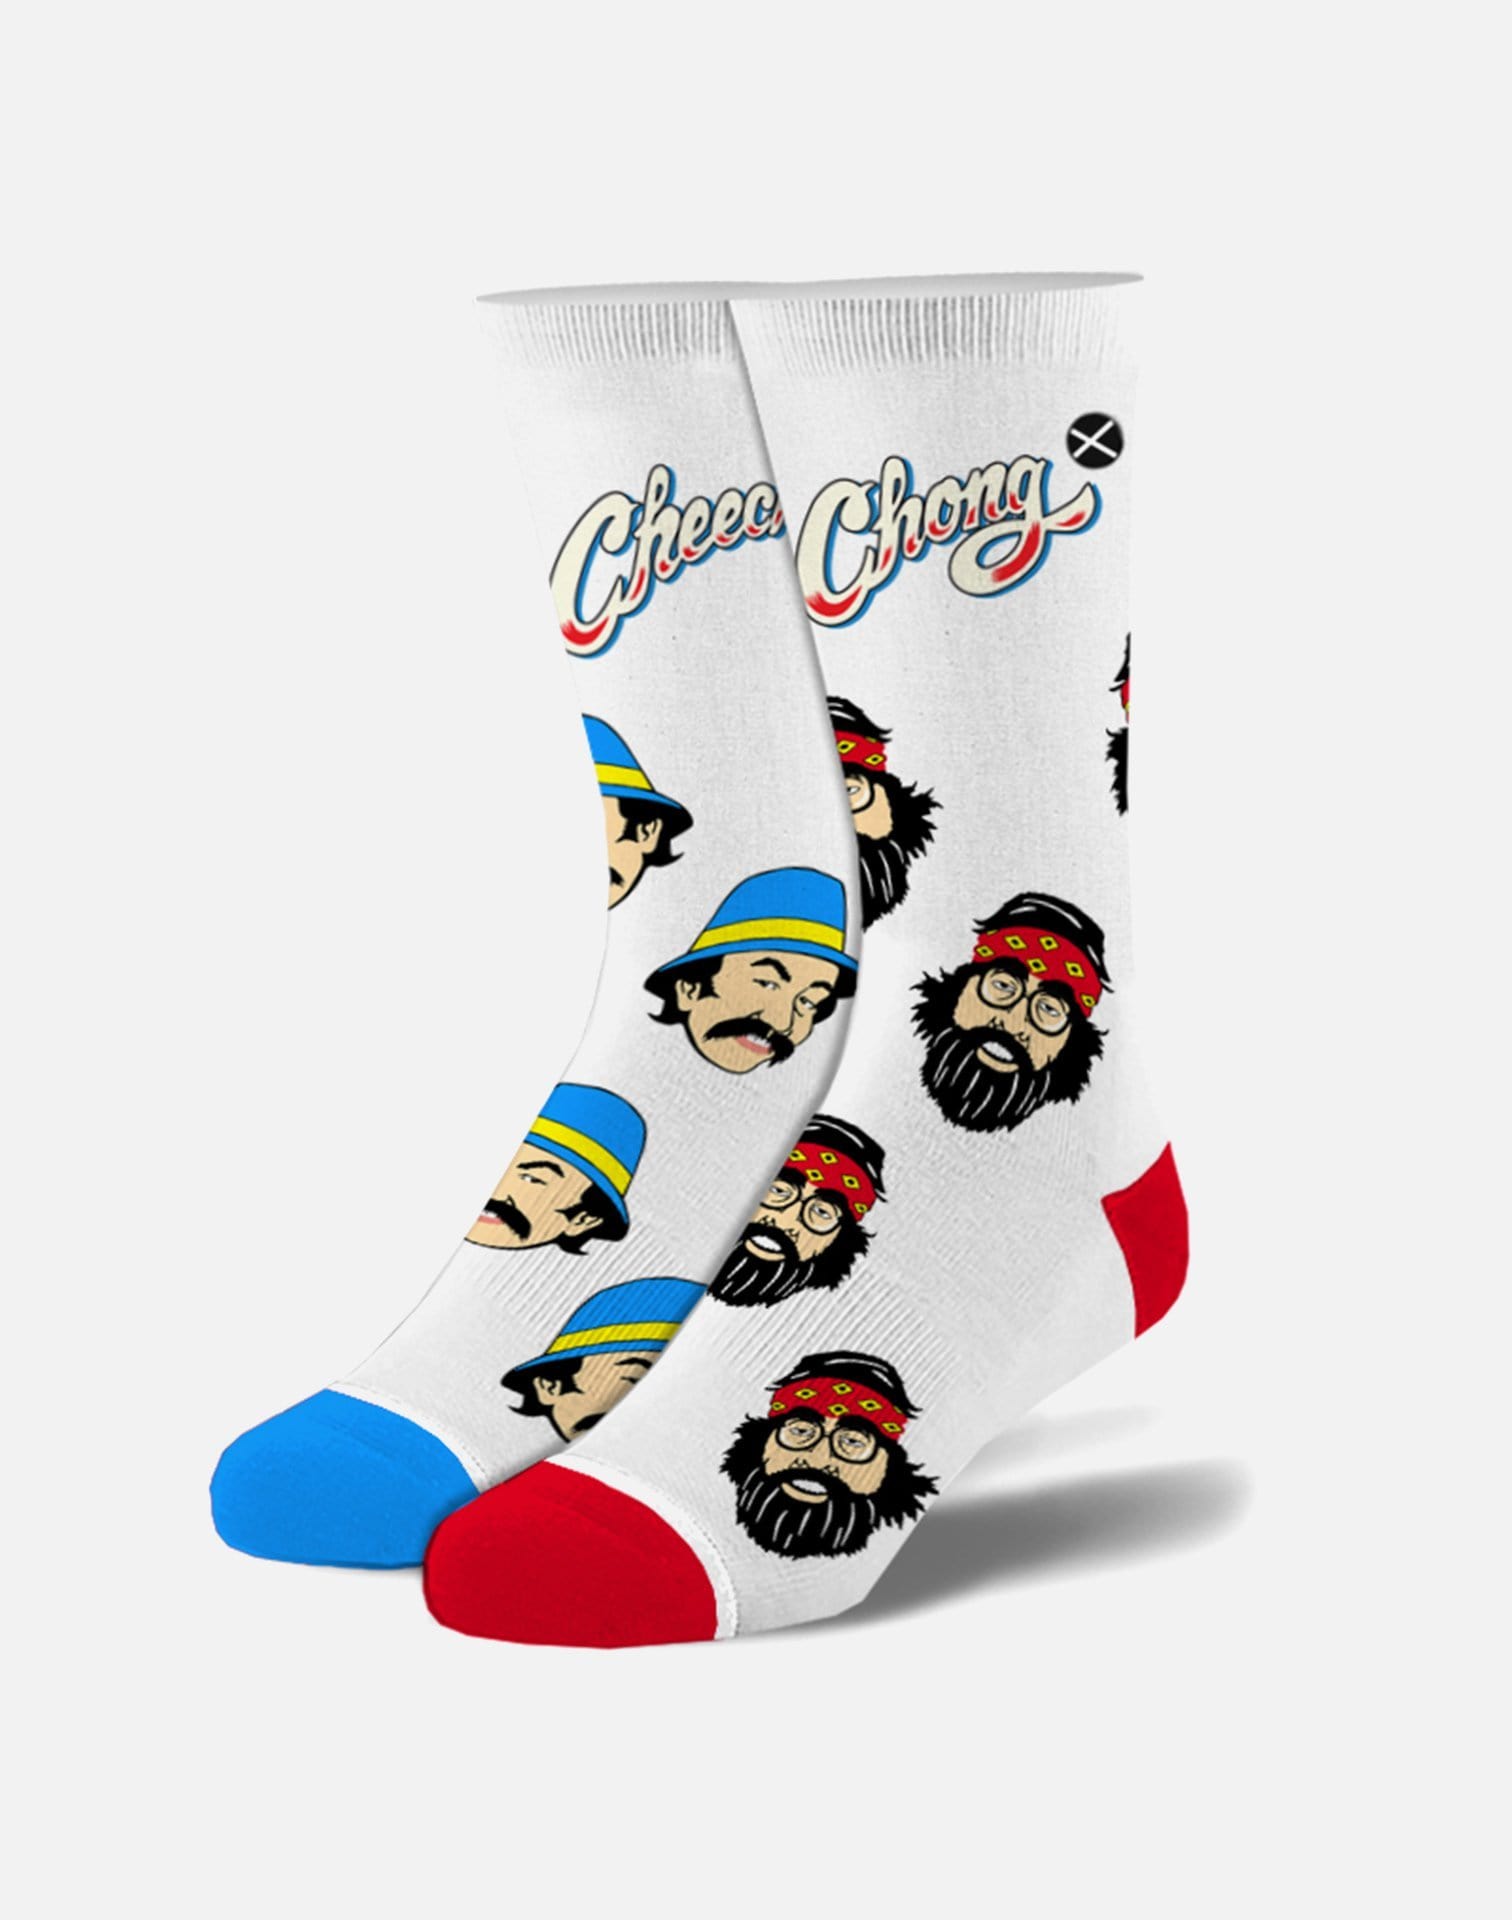 Odd Sox Cheech & Chong Heads Socks